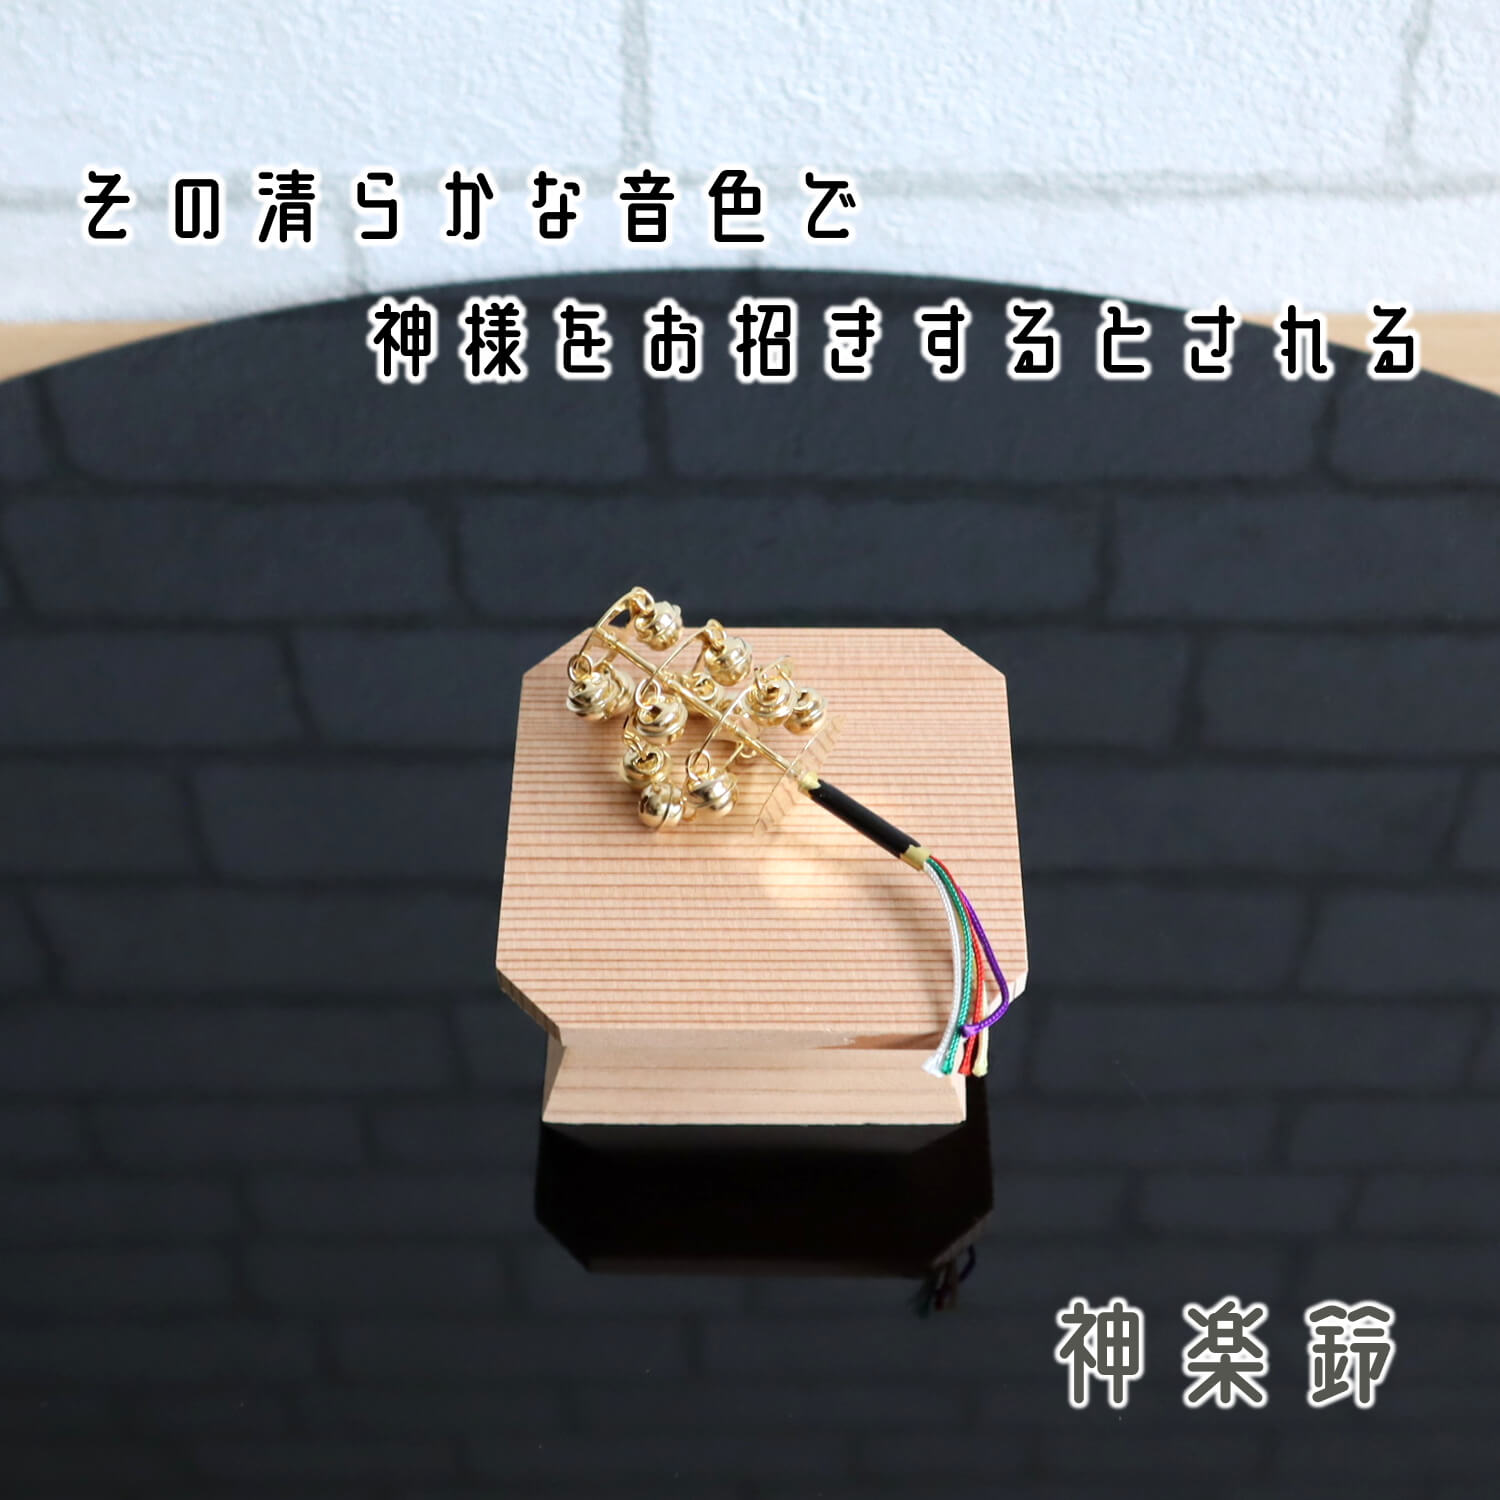 高岡銅器 香炉 玉形三友文 焼青銅色 131-01 仏壇、仏具 | www.vinoflix.com